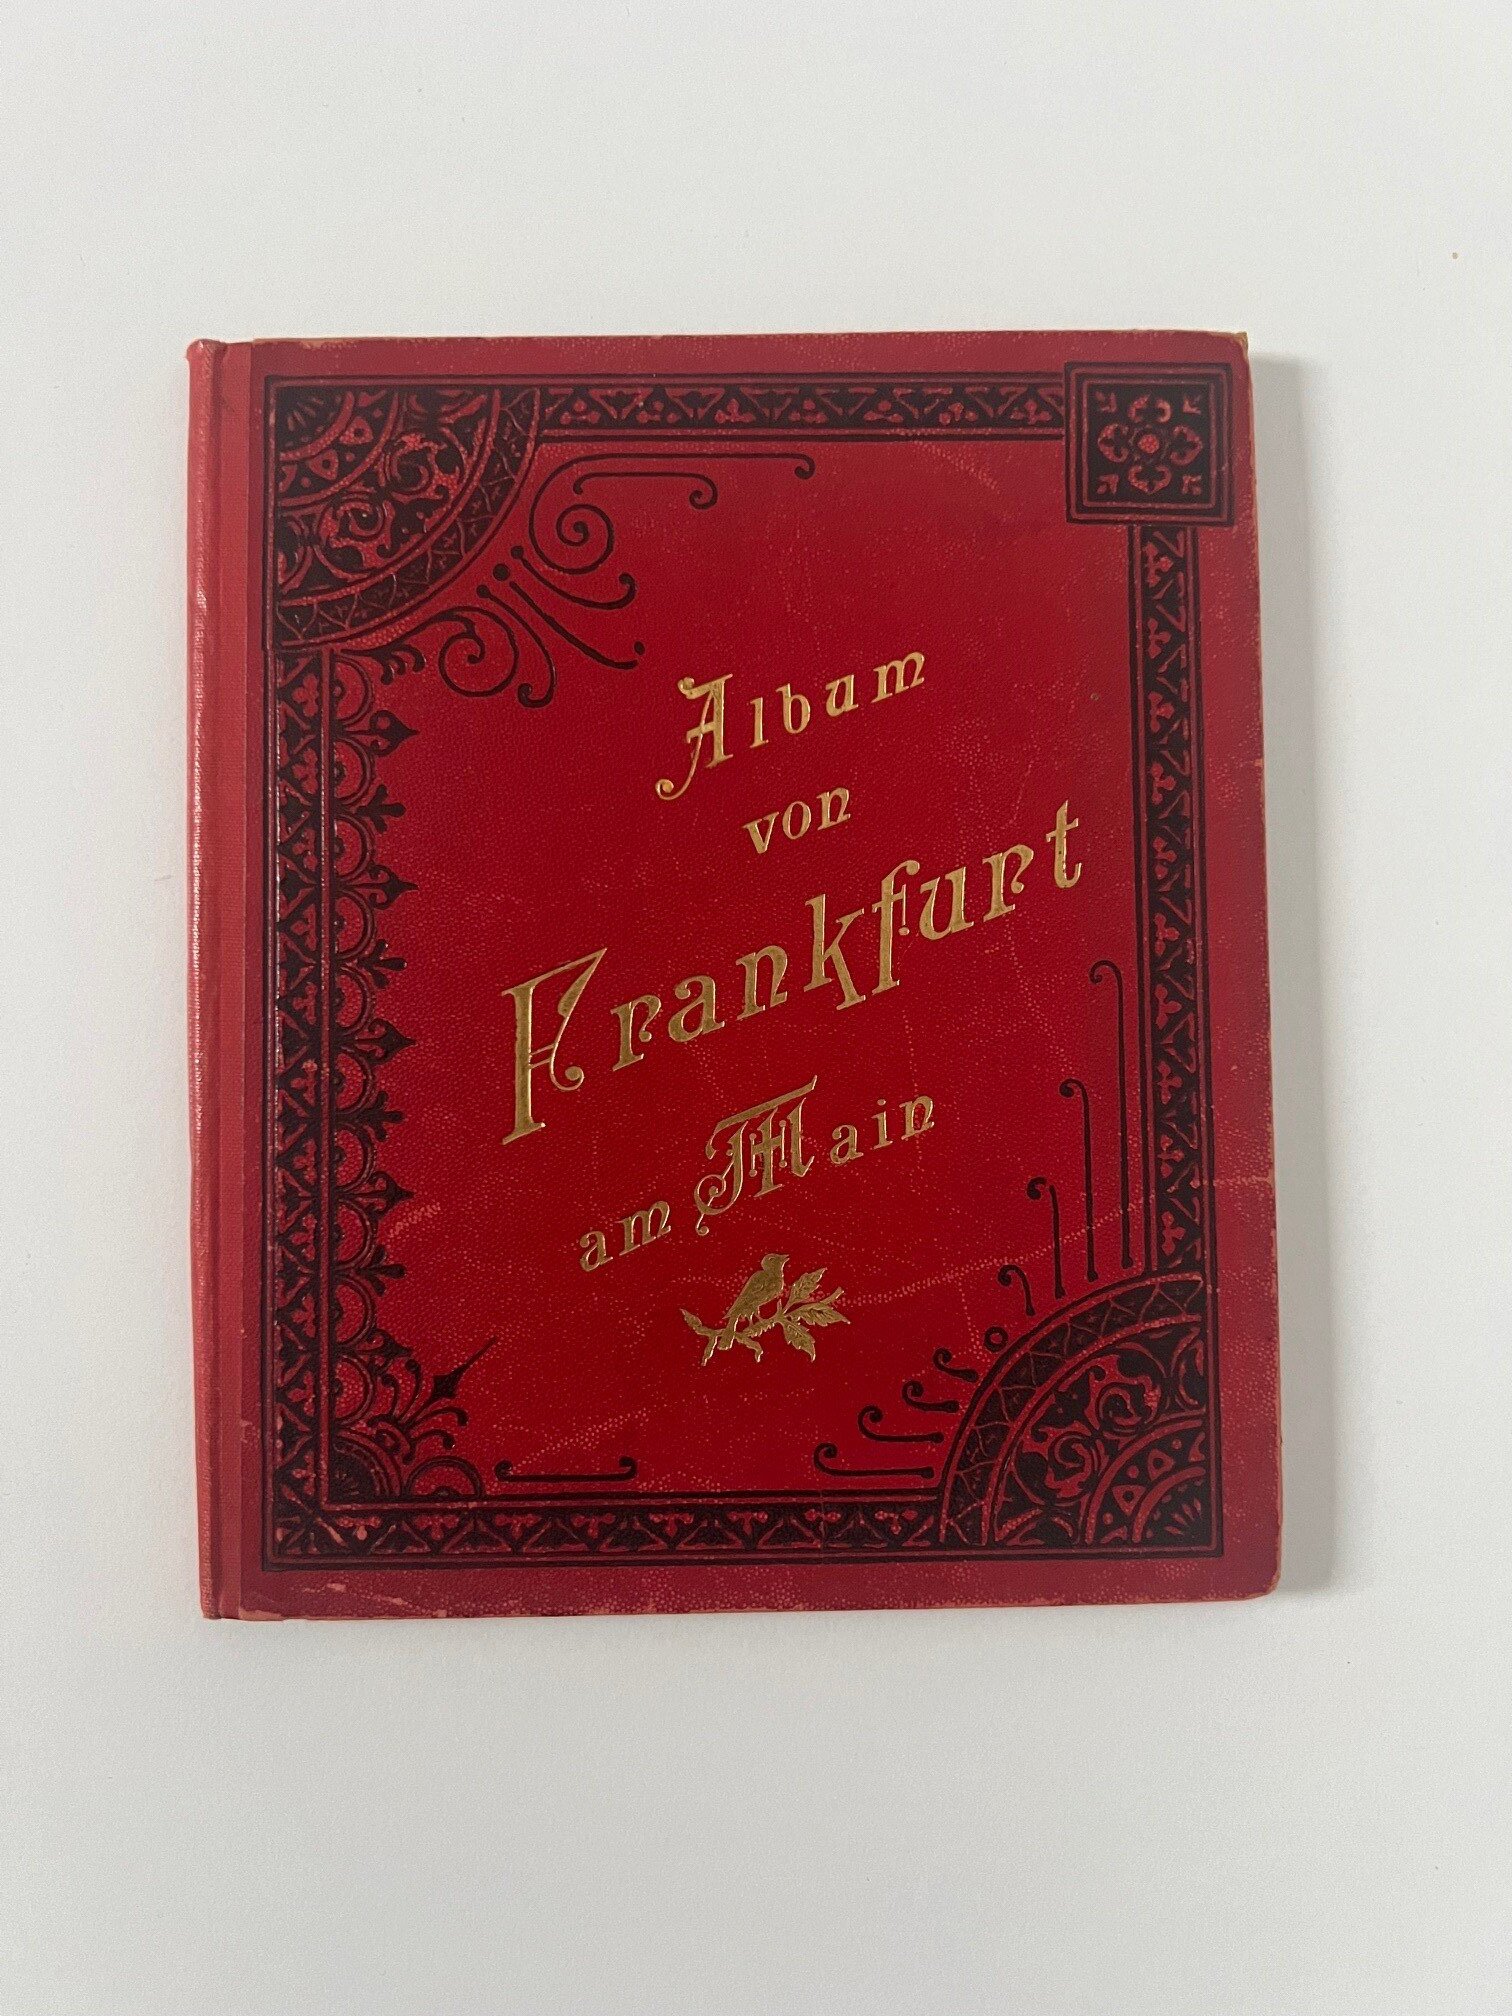 Verlag Gerhard Blümlein & Co, Album von Frankfurt am Main, 35 Lithographien als Leporello, ca. 1902. (Taunus-Rhein-Main - Regionalgeschichtliche Sammlung Dr. Stefan Naas CC BY-NC-SA)